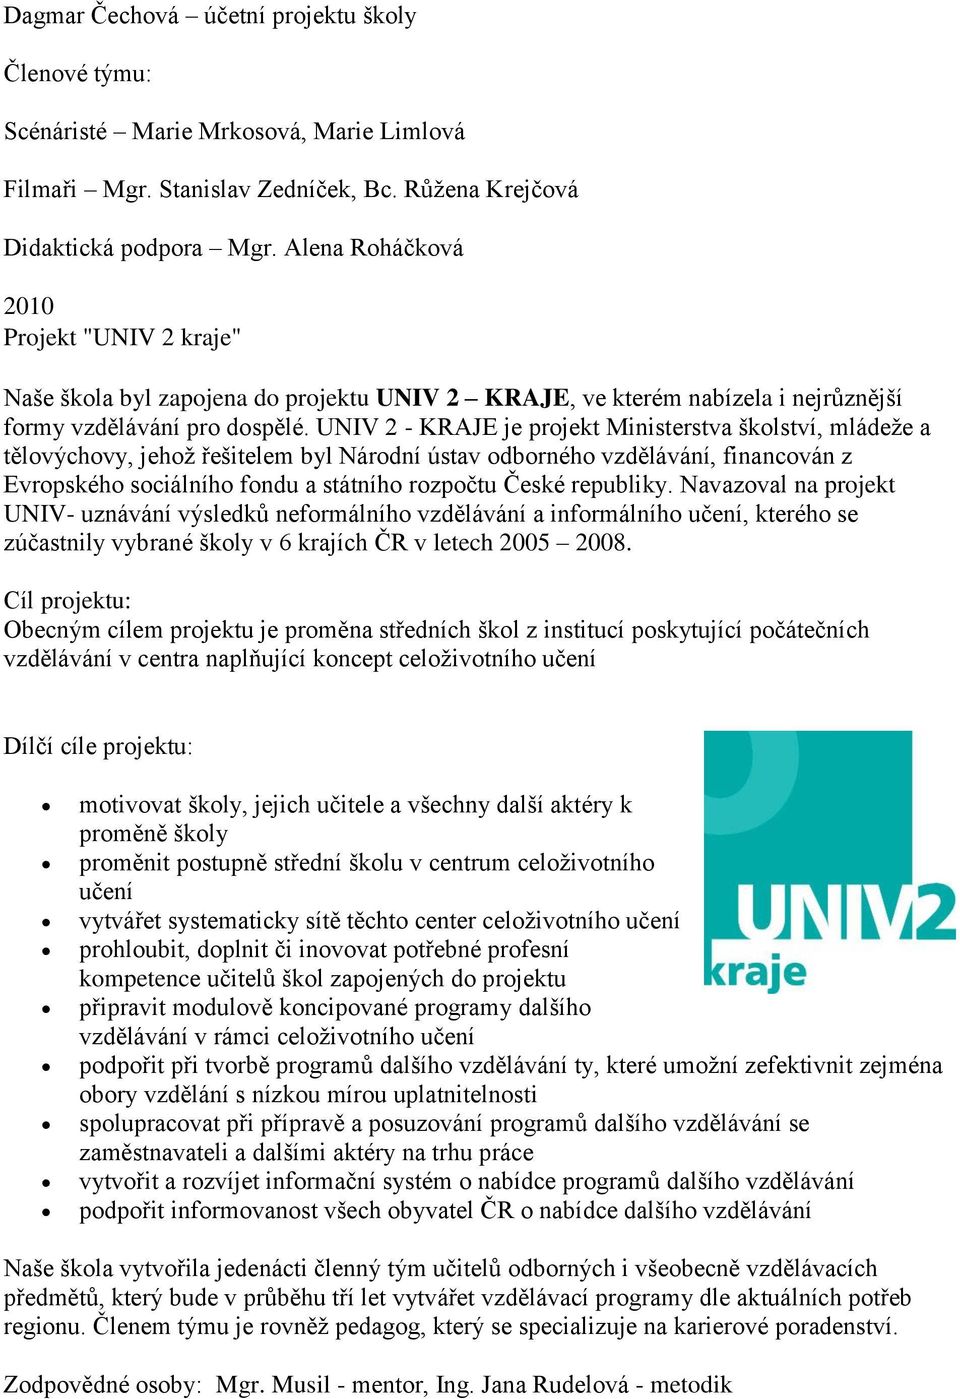 UNIV 2 - KRAJE je projekt Ministerstva školství, mládeže a tělovýchovy, jehož řešitelem byl Národní ústav odborného vzdělávání, financován z Evropského sociálního fondu a státního rozpočtu České